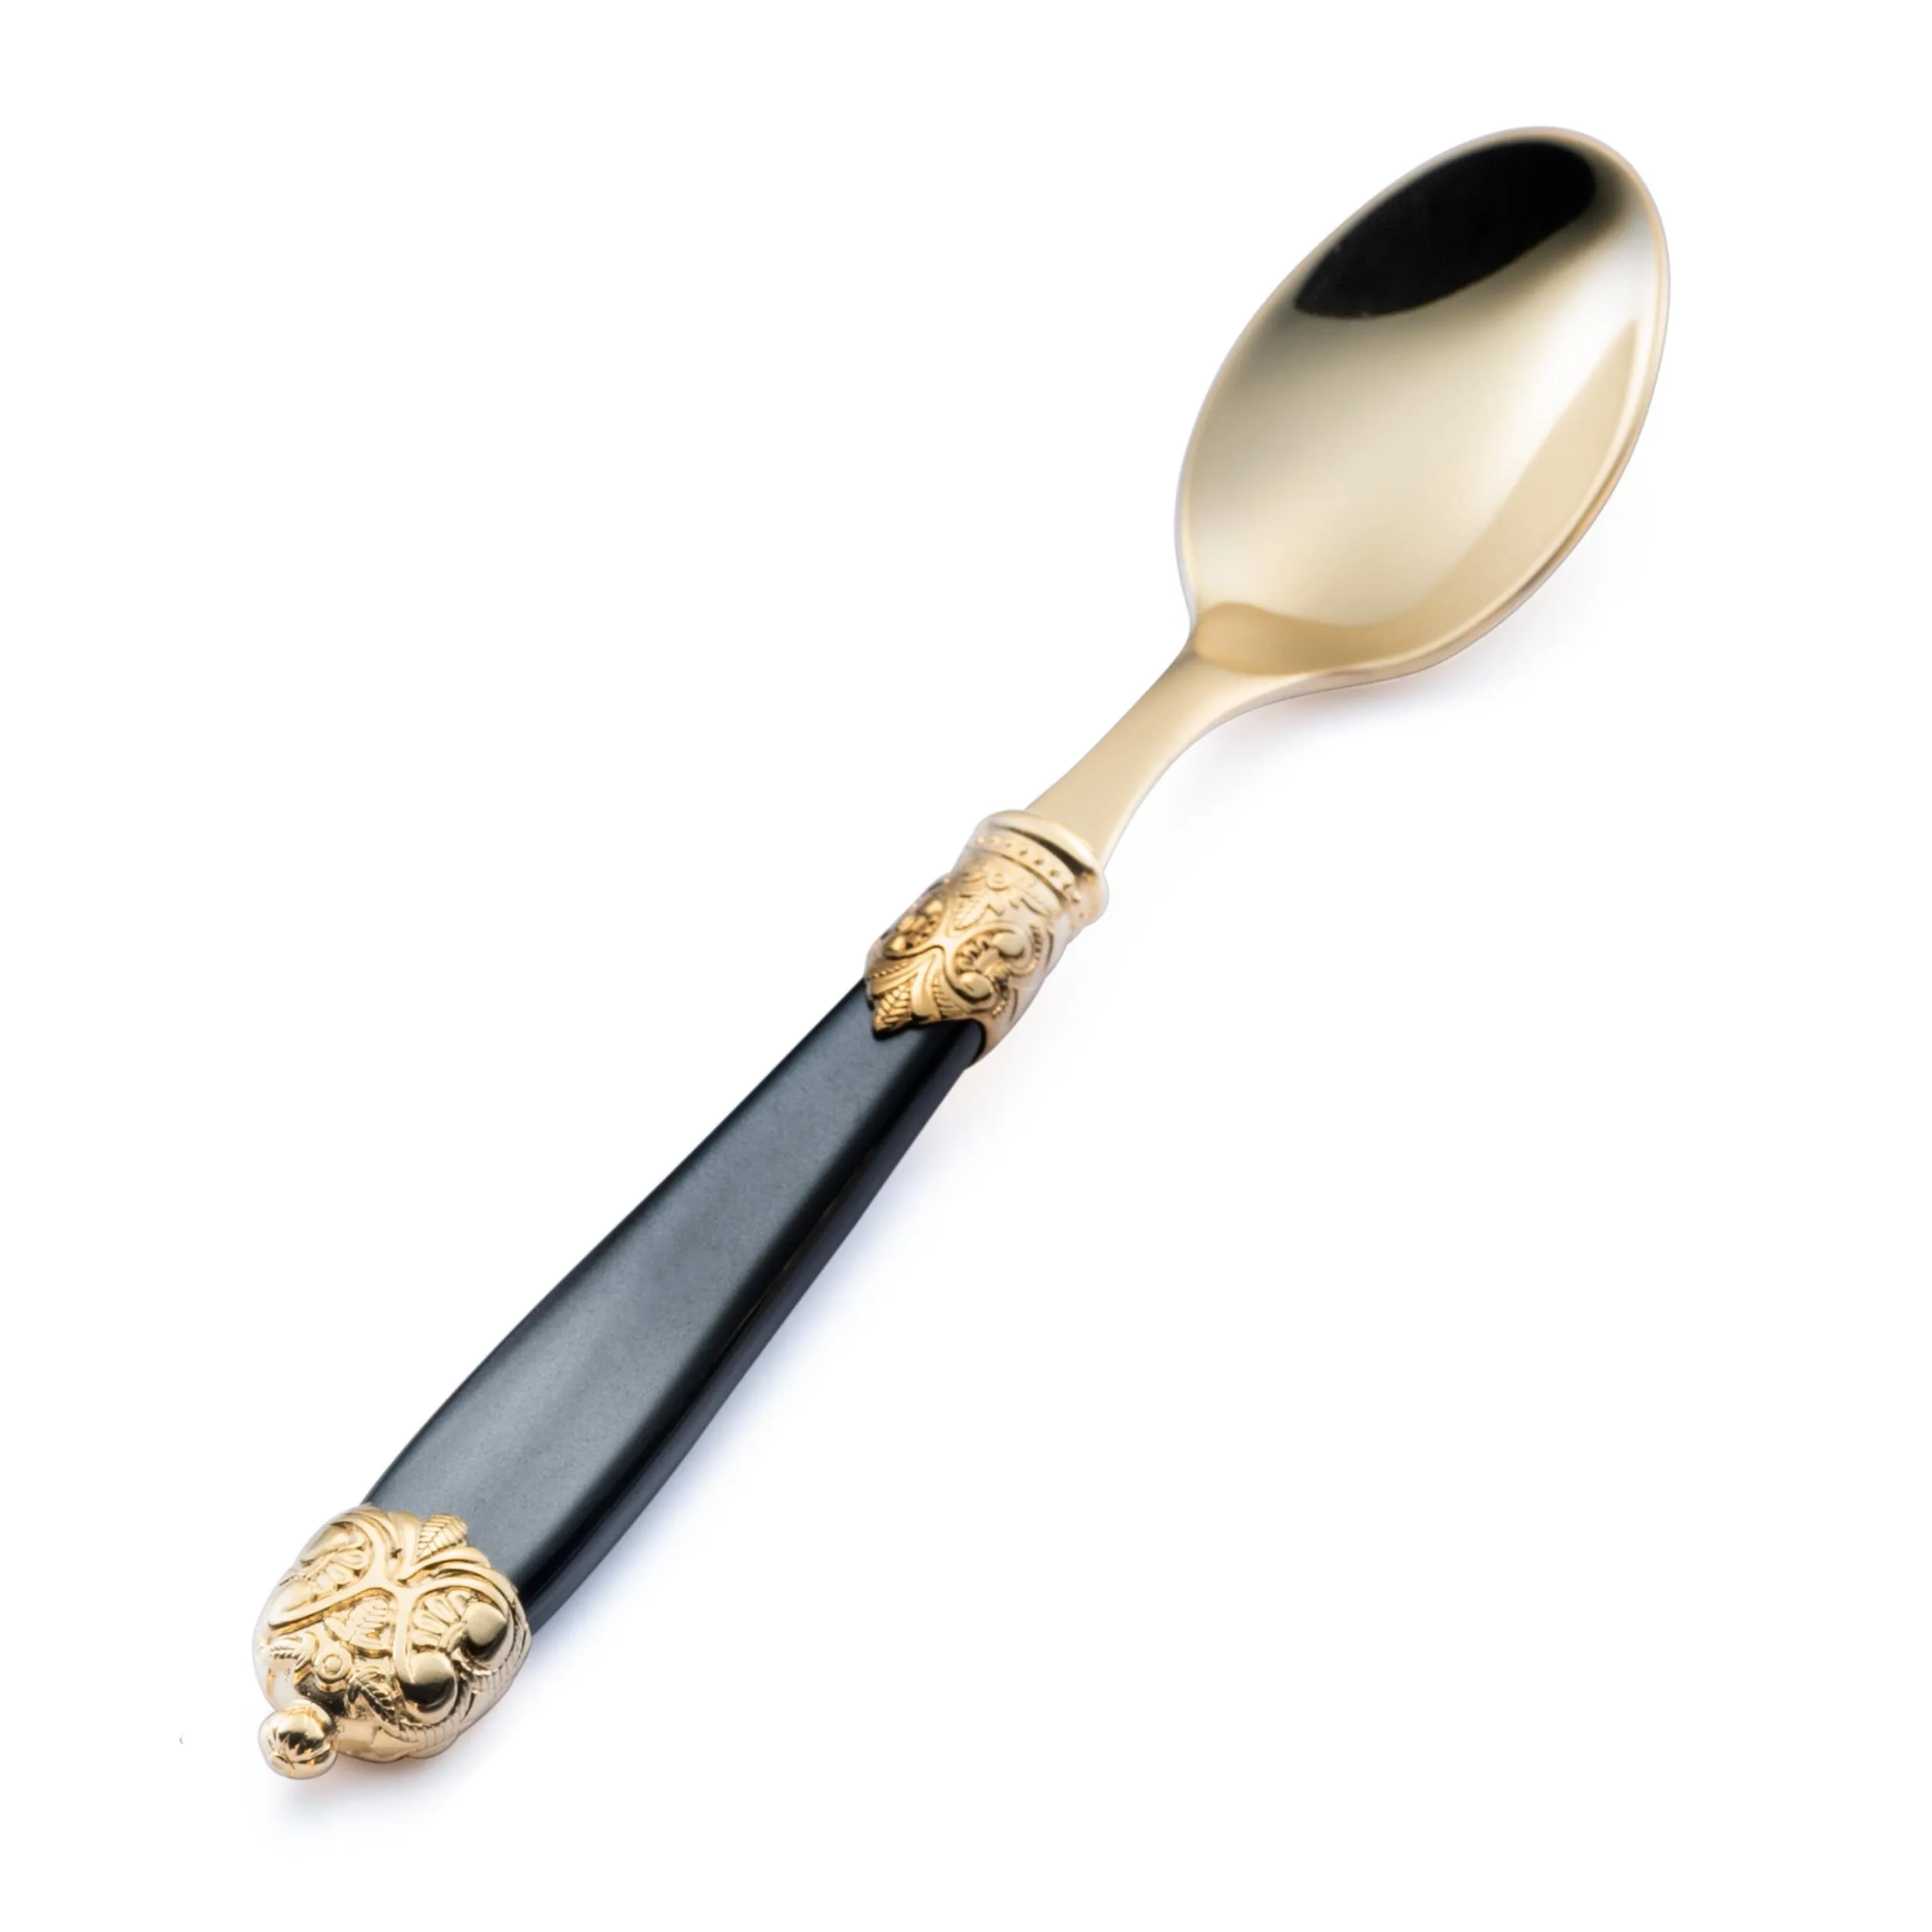 Cucchiaino da caffè Mirage in Ghiere oro Tin Gold 18.10 (AISI 304) manico perlato doppia ghiera lavabili in lavastoviglie Nero Perlato